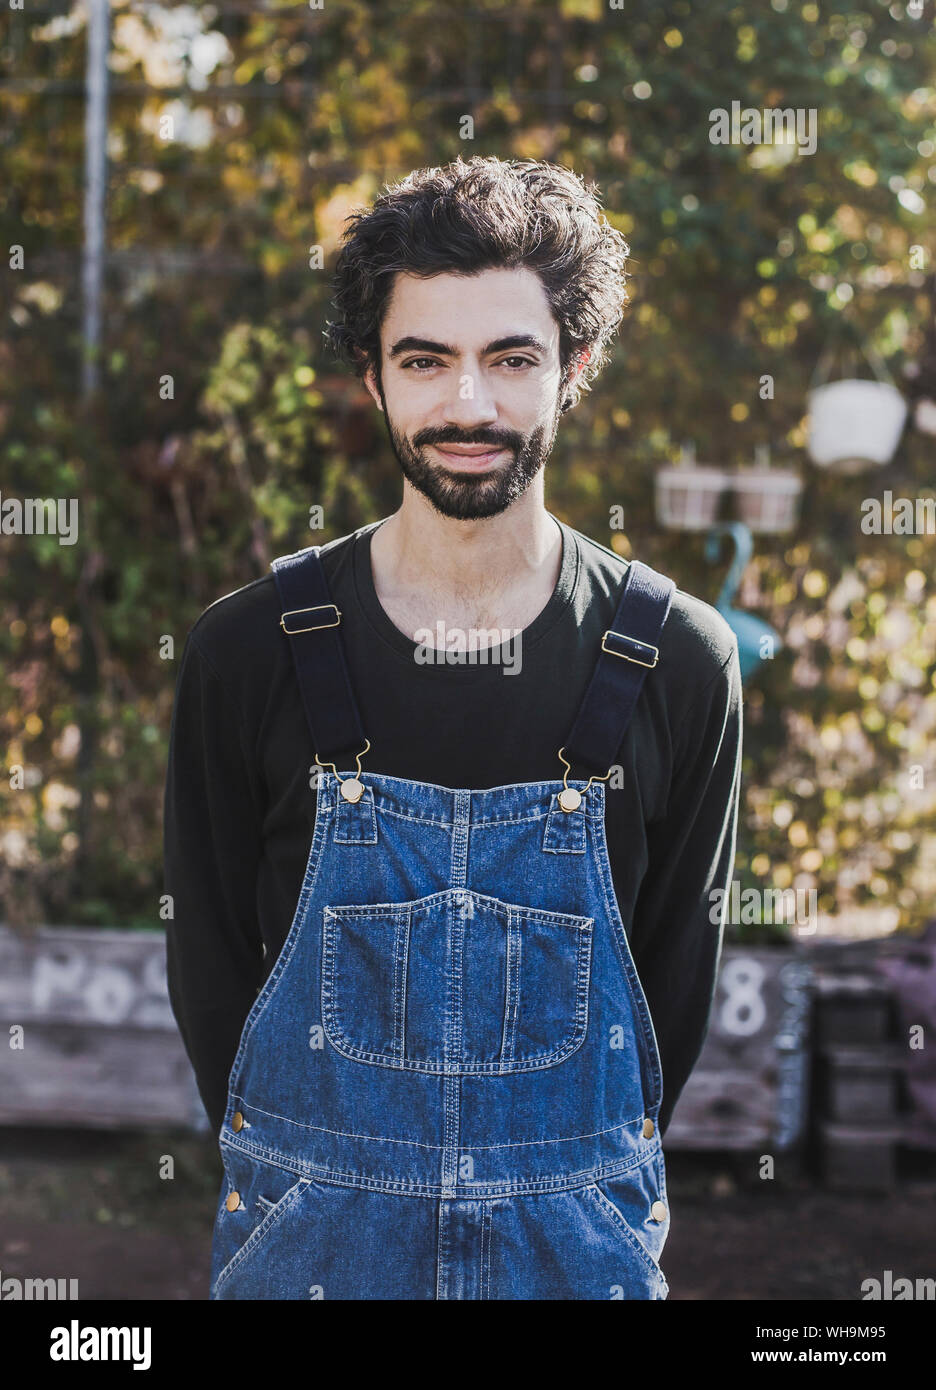 Portrait von lächelnden Mann in Jeans Latzhose im Garten Stockfotografie -  Alamy